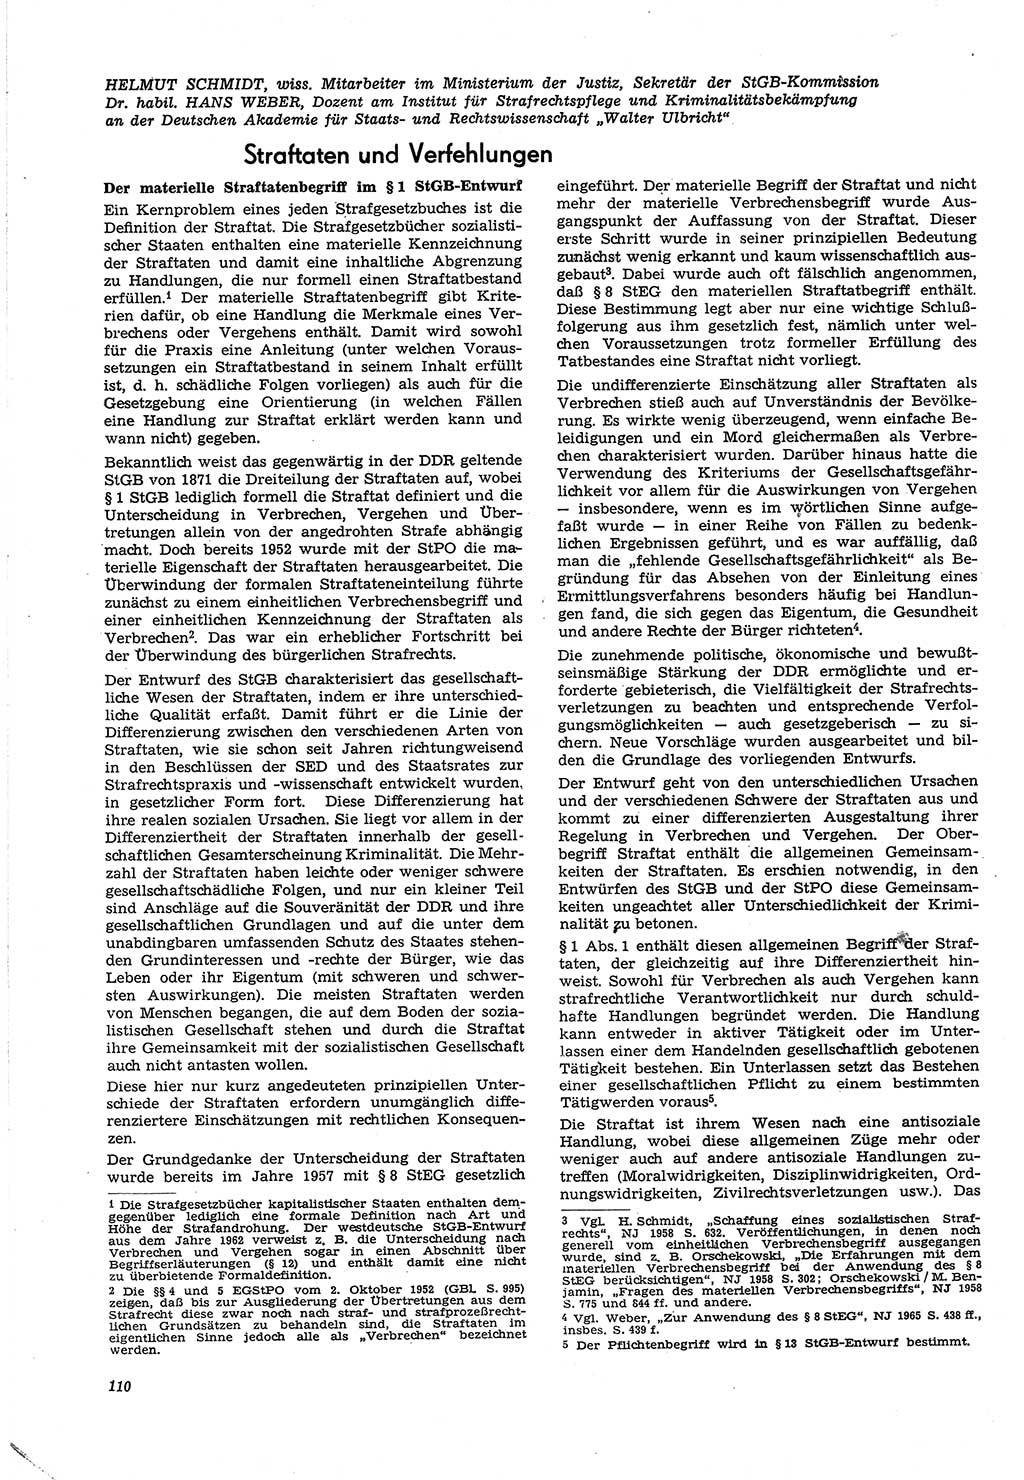 Neue Justiz (NJ), Zeitschrift für Recht und Rechtswissenschaft [Deutsche Demokratische Republik (DDR)], 21. Jahrgang 1967, Seite 110 (NJ DDR 1967, S. 110)